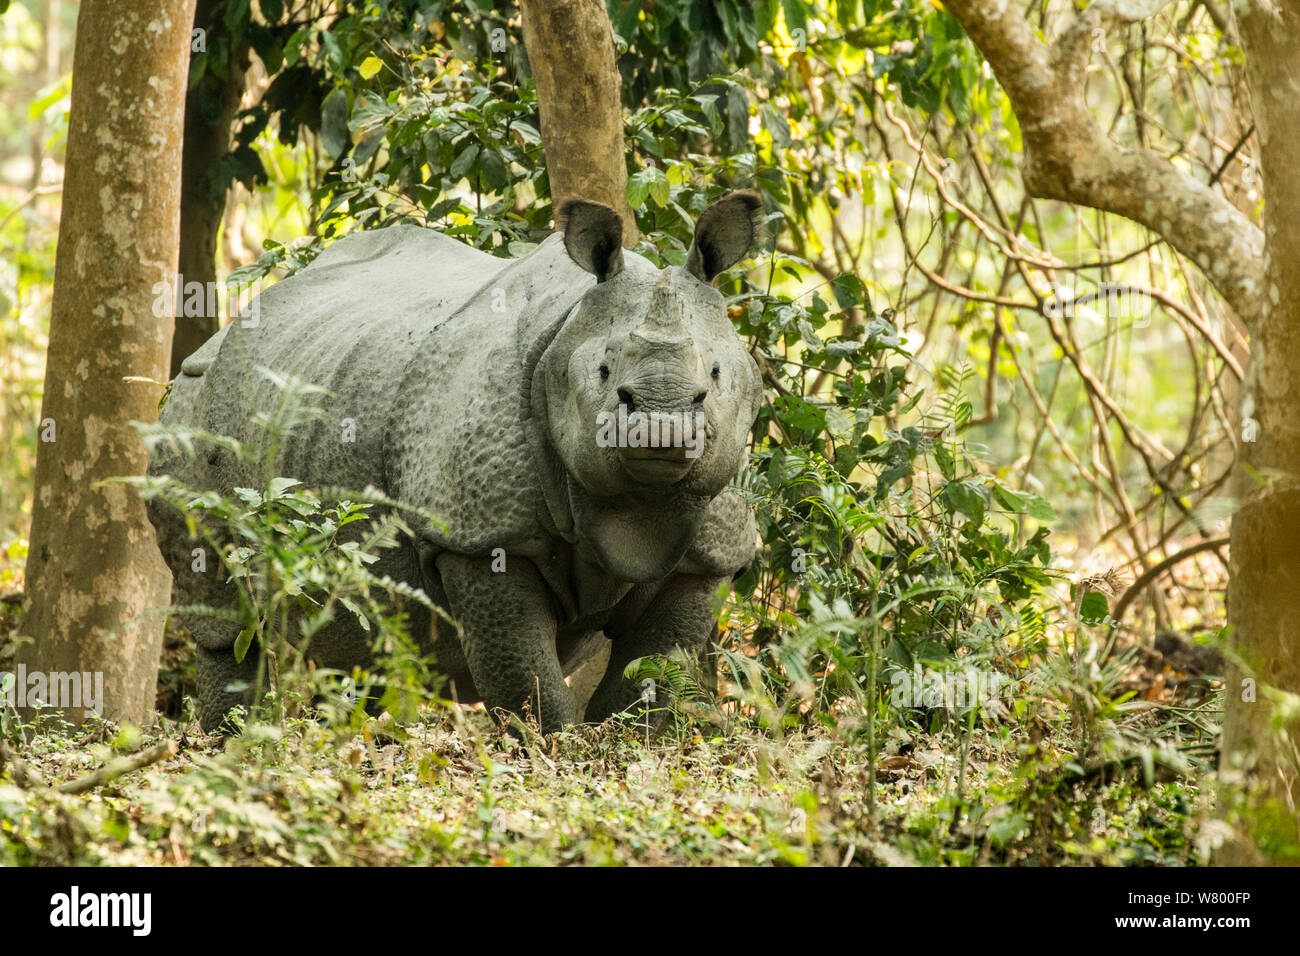 Le rhinocéros indien (Rhinoceros unicornis), homme, parc national de Kaziranga, Assam, Inde Banque D'Images